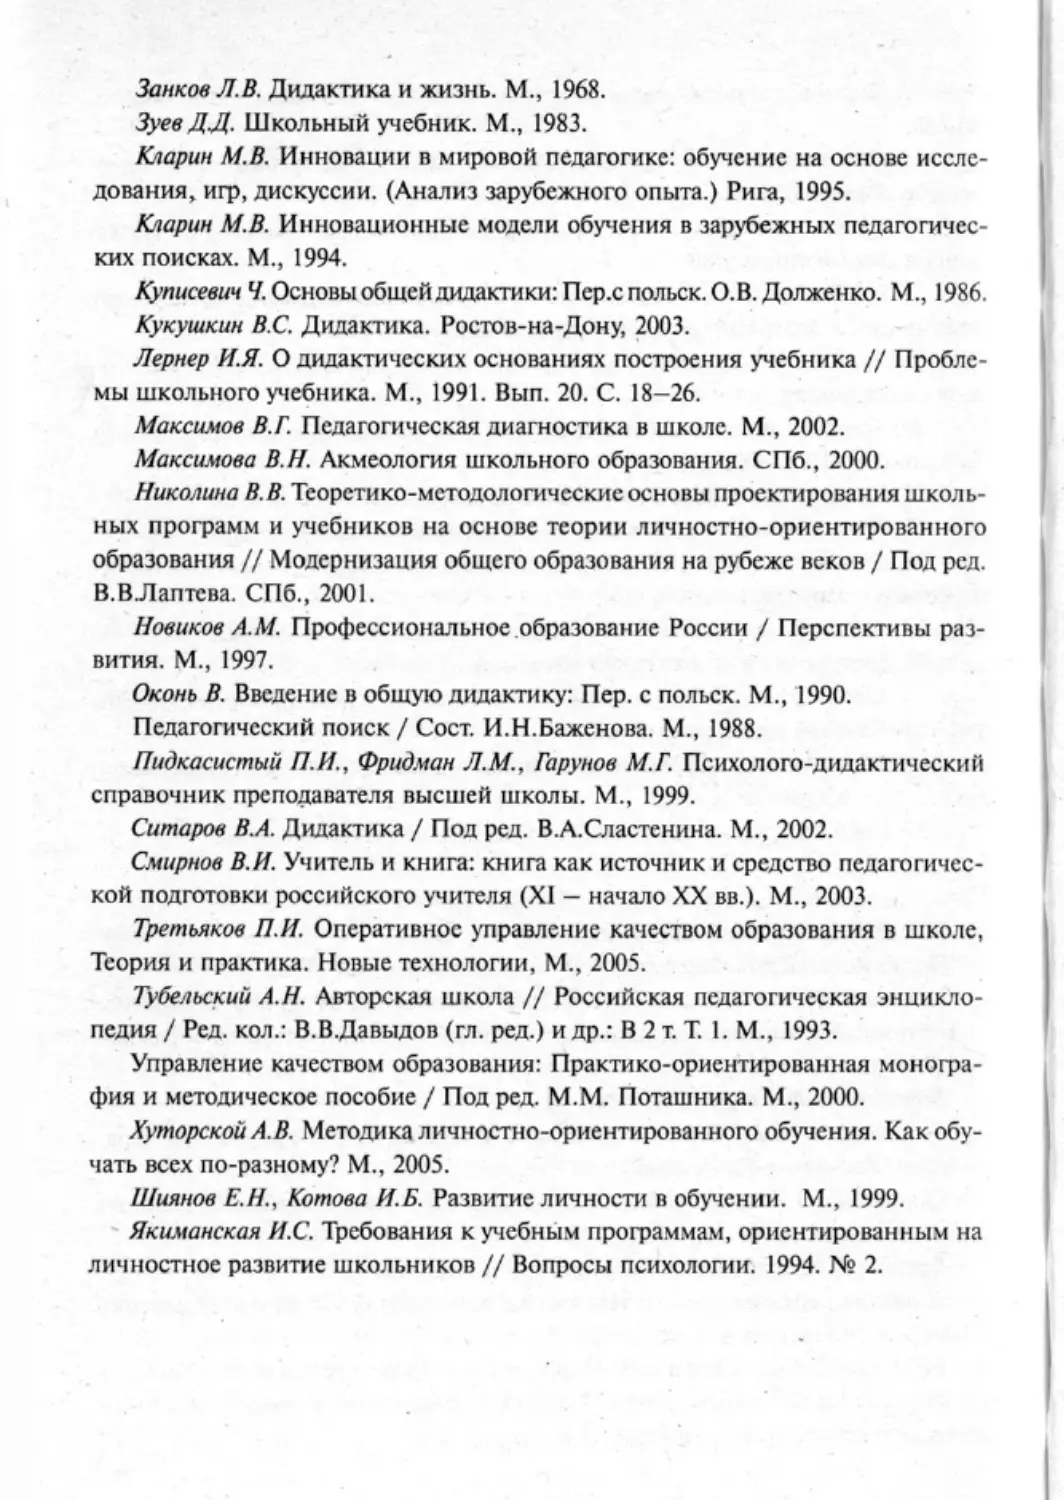 Загрекова Л.В., Николаева В.В - 0377